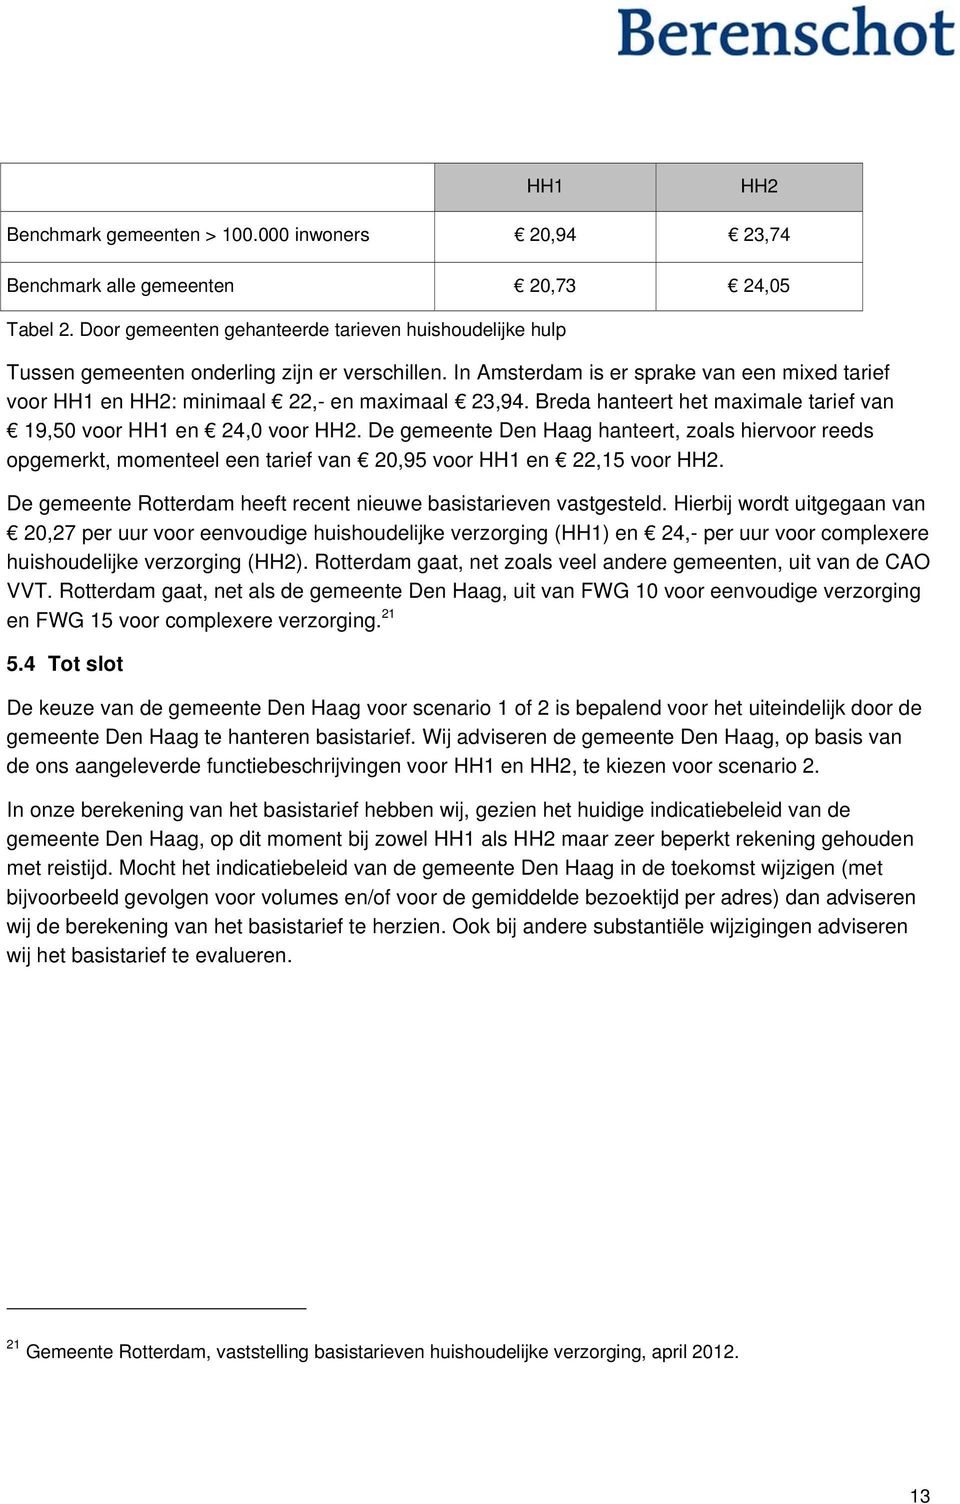 Breda hanteert het maximale tarief van 19,50 voor HH1 en 24,0 voor HH2. De gemeente Den Haag hanteert, zoals hiervoor reeds opgemerkt, momenteel een tarief van 20,95 voor HH1 en 22,15 voor HH2.